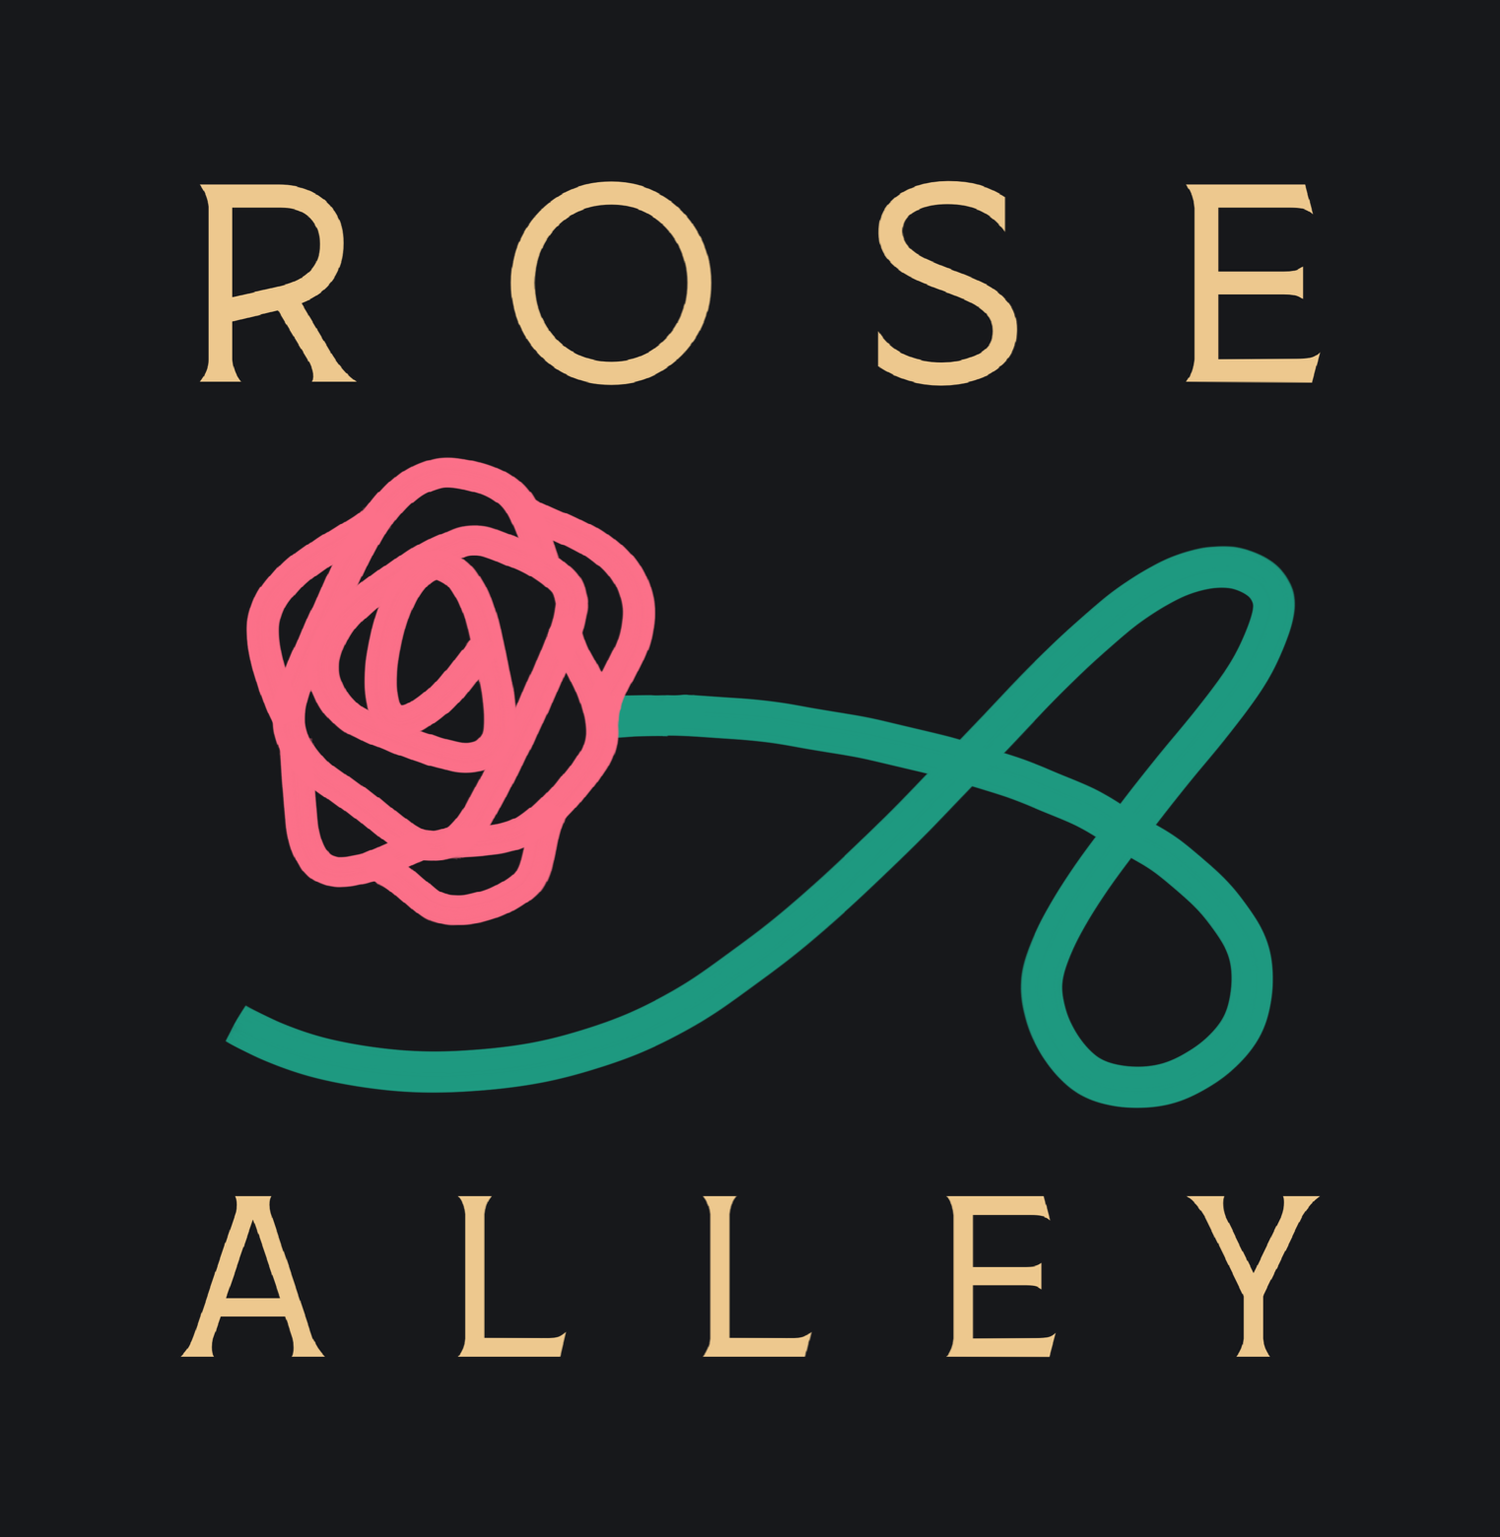 ROSE ALLEY